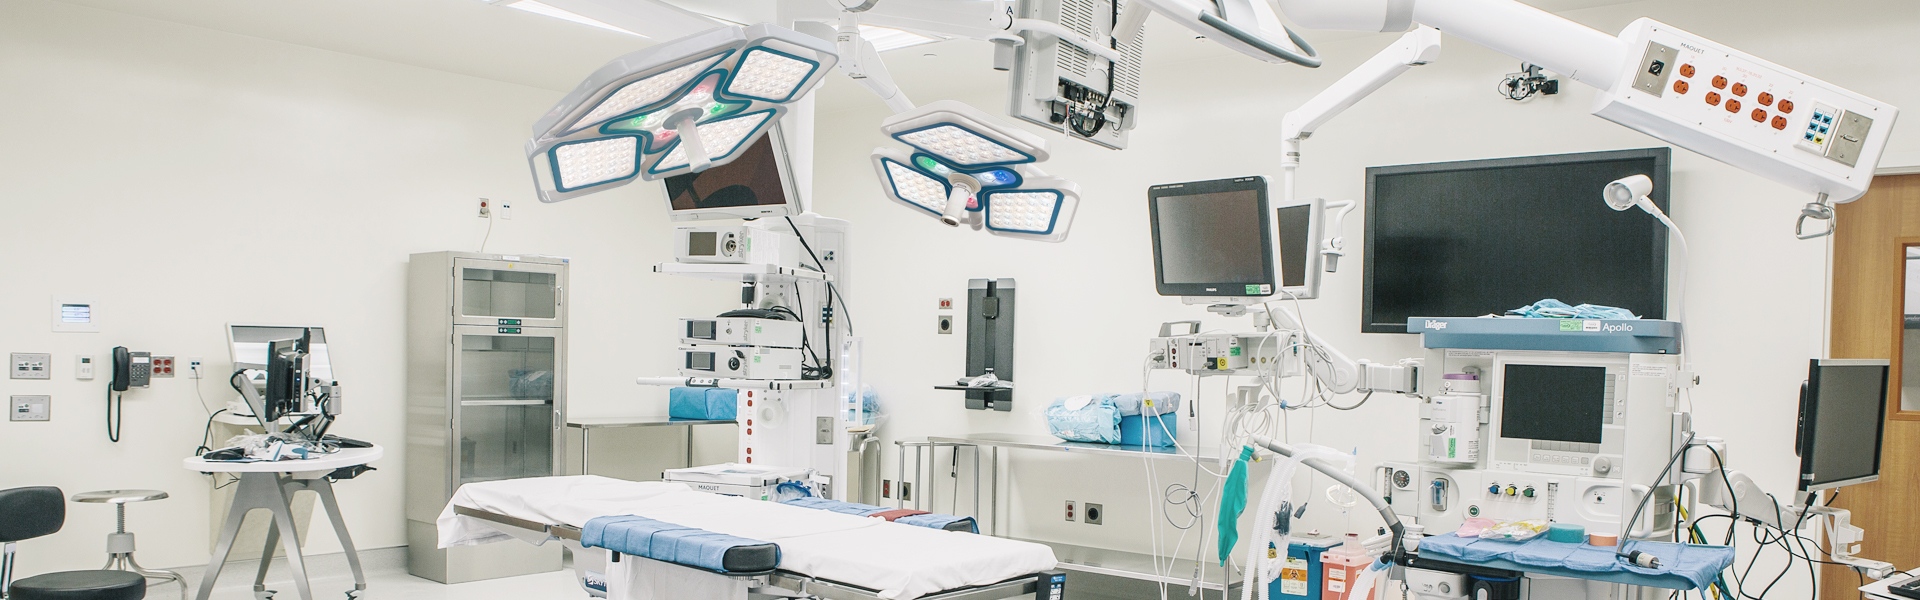 مصباح جراحي LED لغرفة العمليات قابل للتعديل برأس مزدوج مثبت على السقف من MICARE